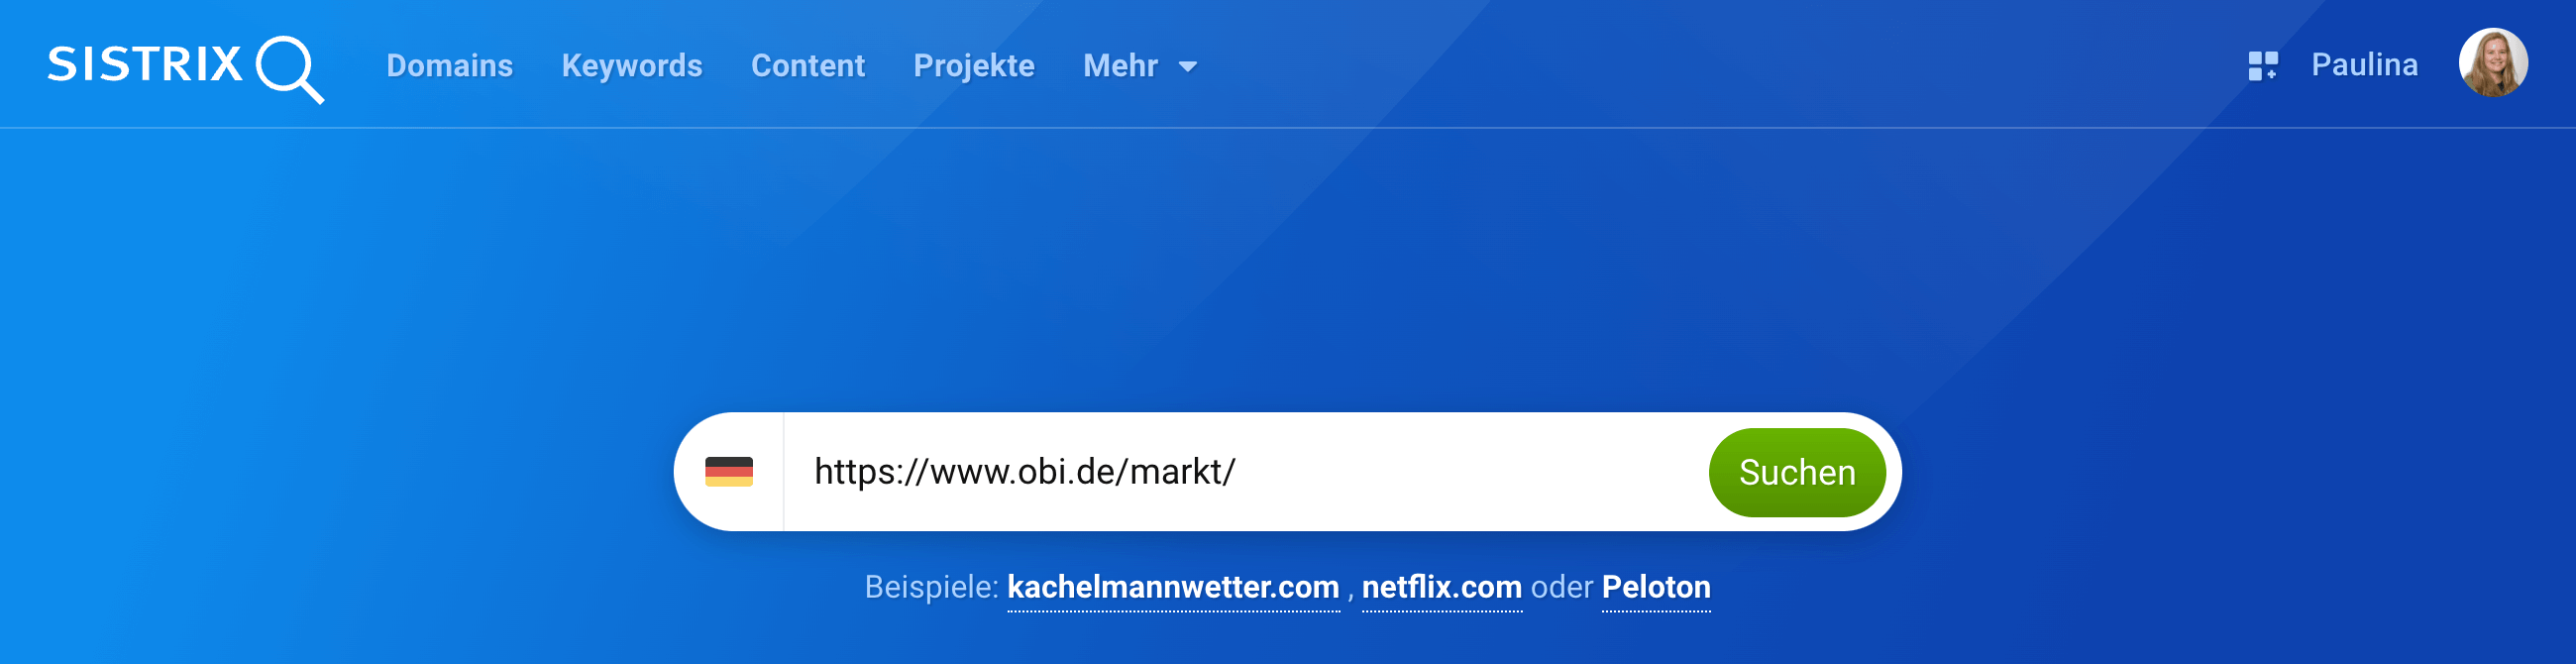 In den SISTRIX-Suchschlitz wurde das Verzeichnis https://www.obi.de/markt/ eingetragen.